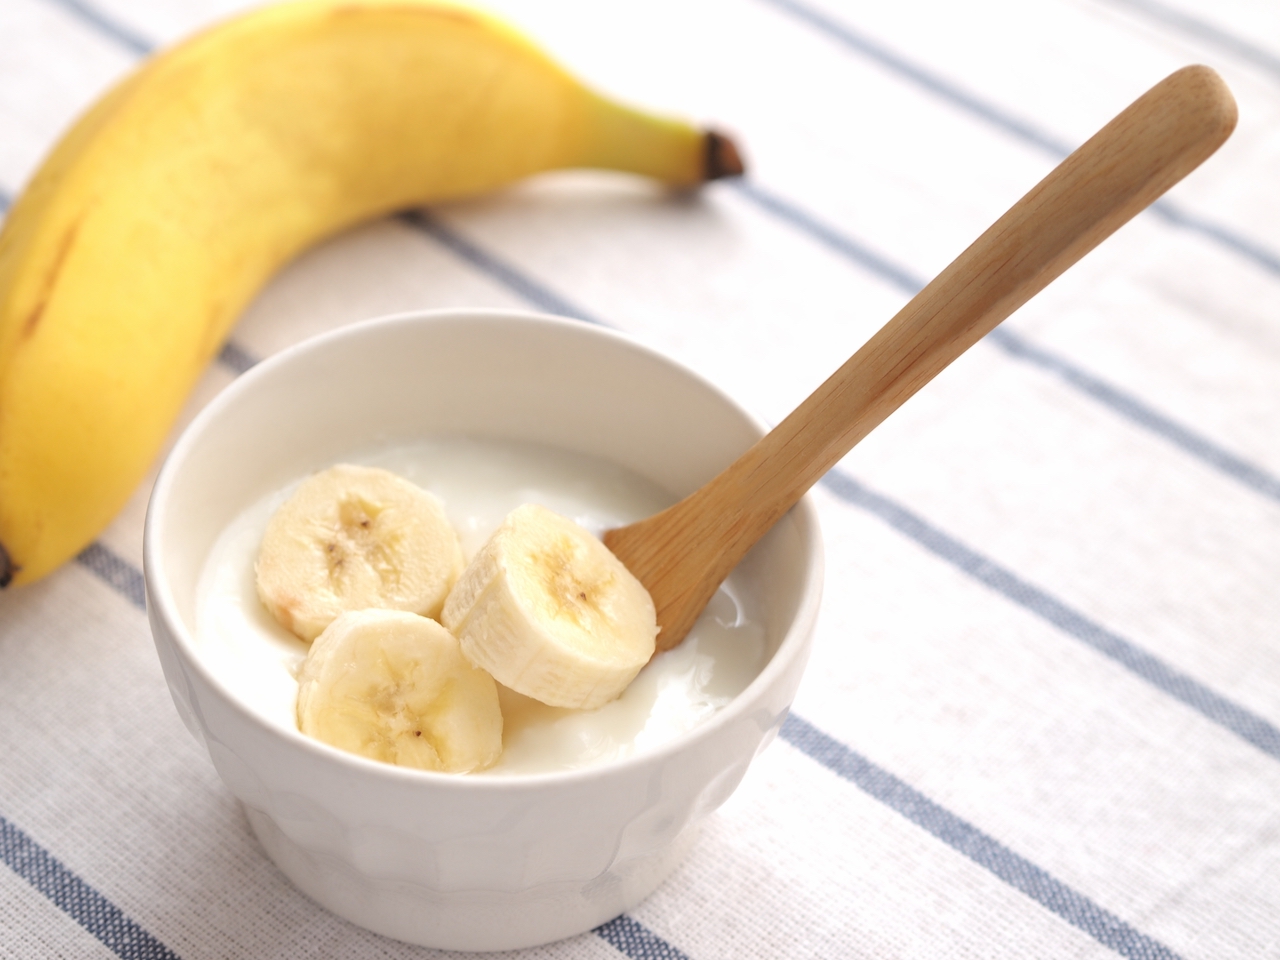 バナナは糖質が高いから太る ダイエット中はng 専門家に詳しく聞いてみた